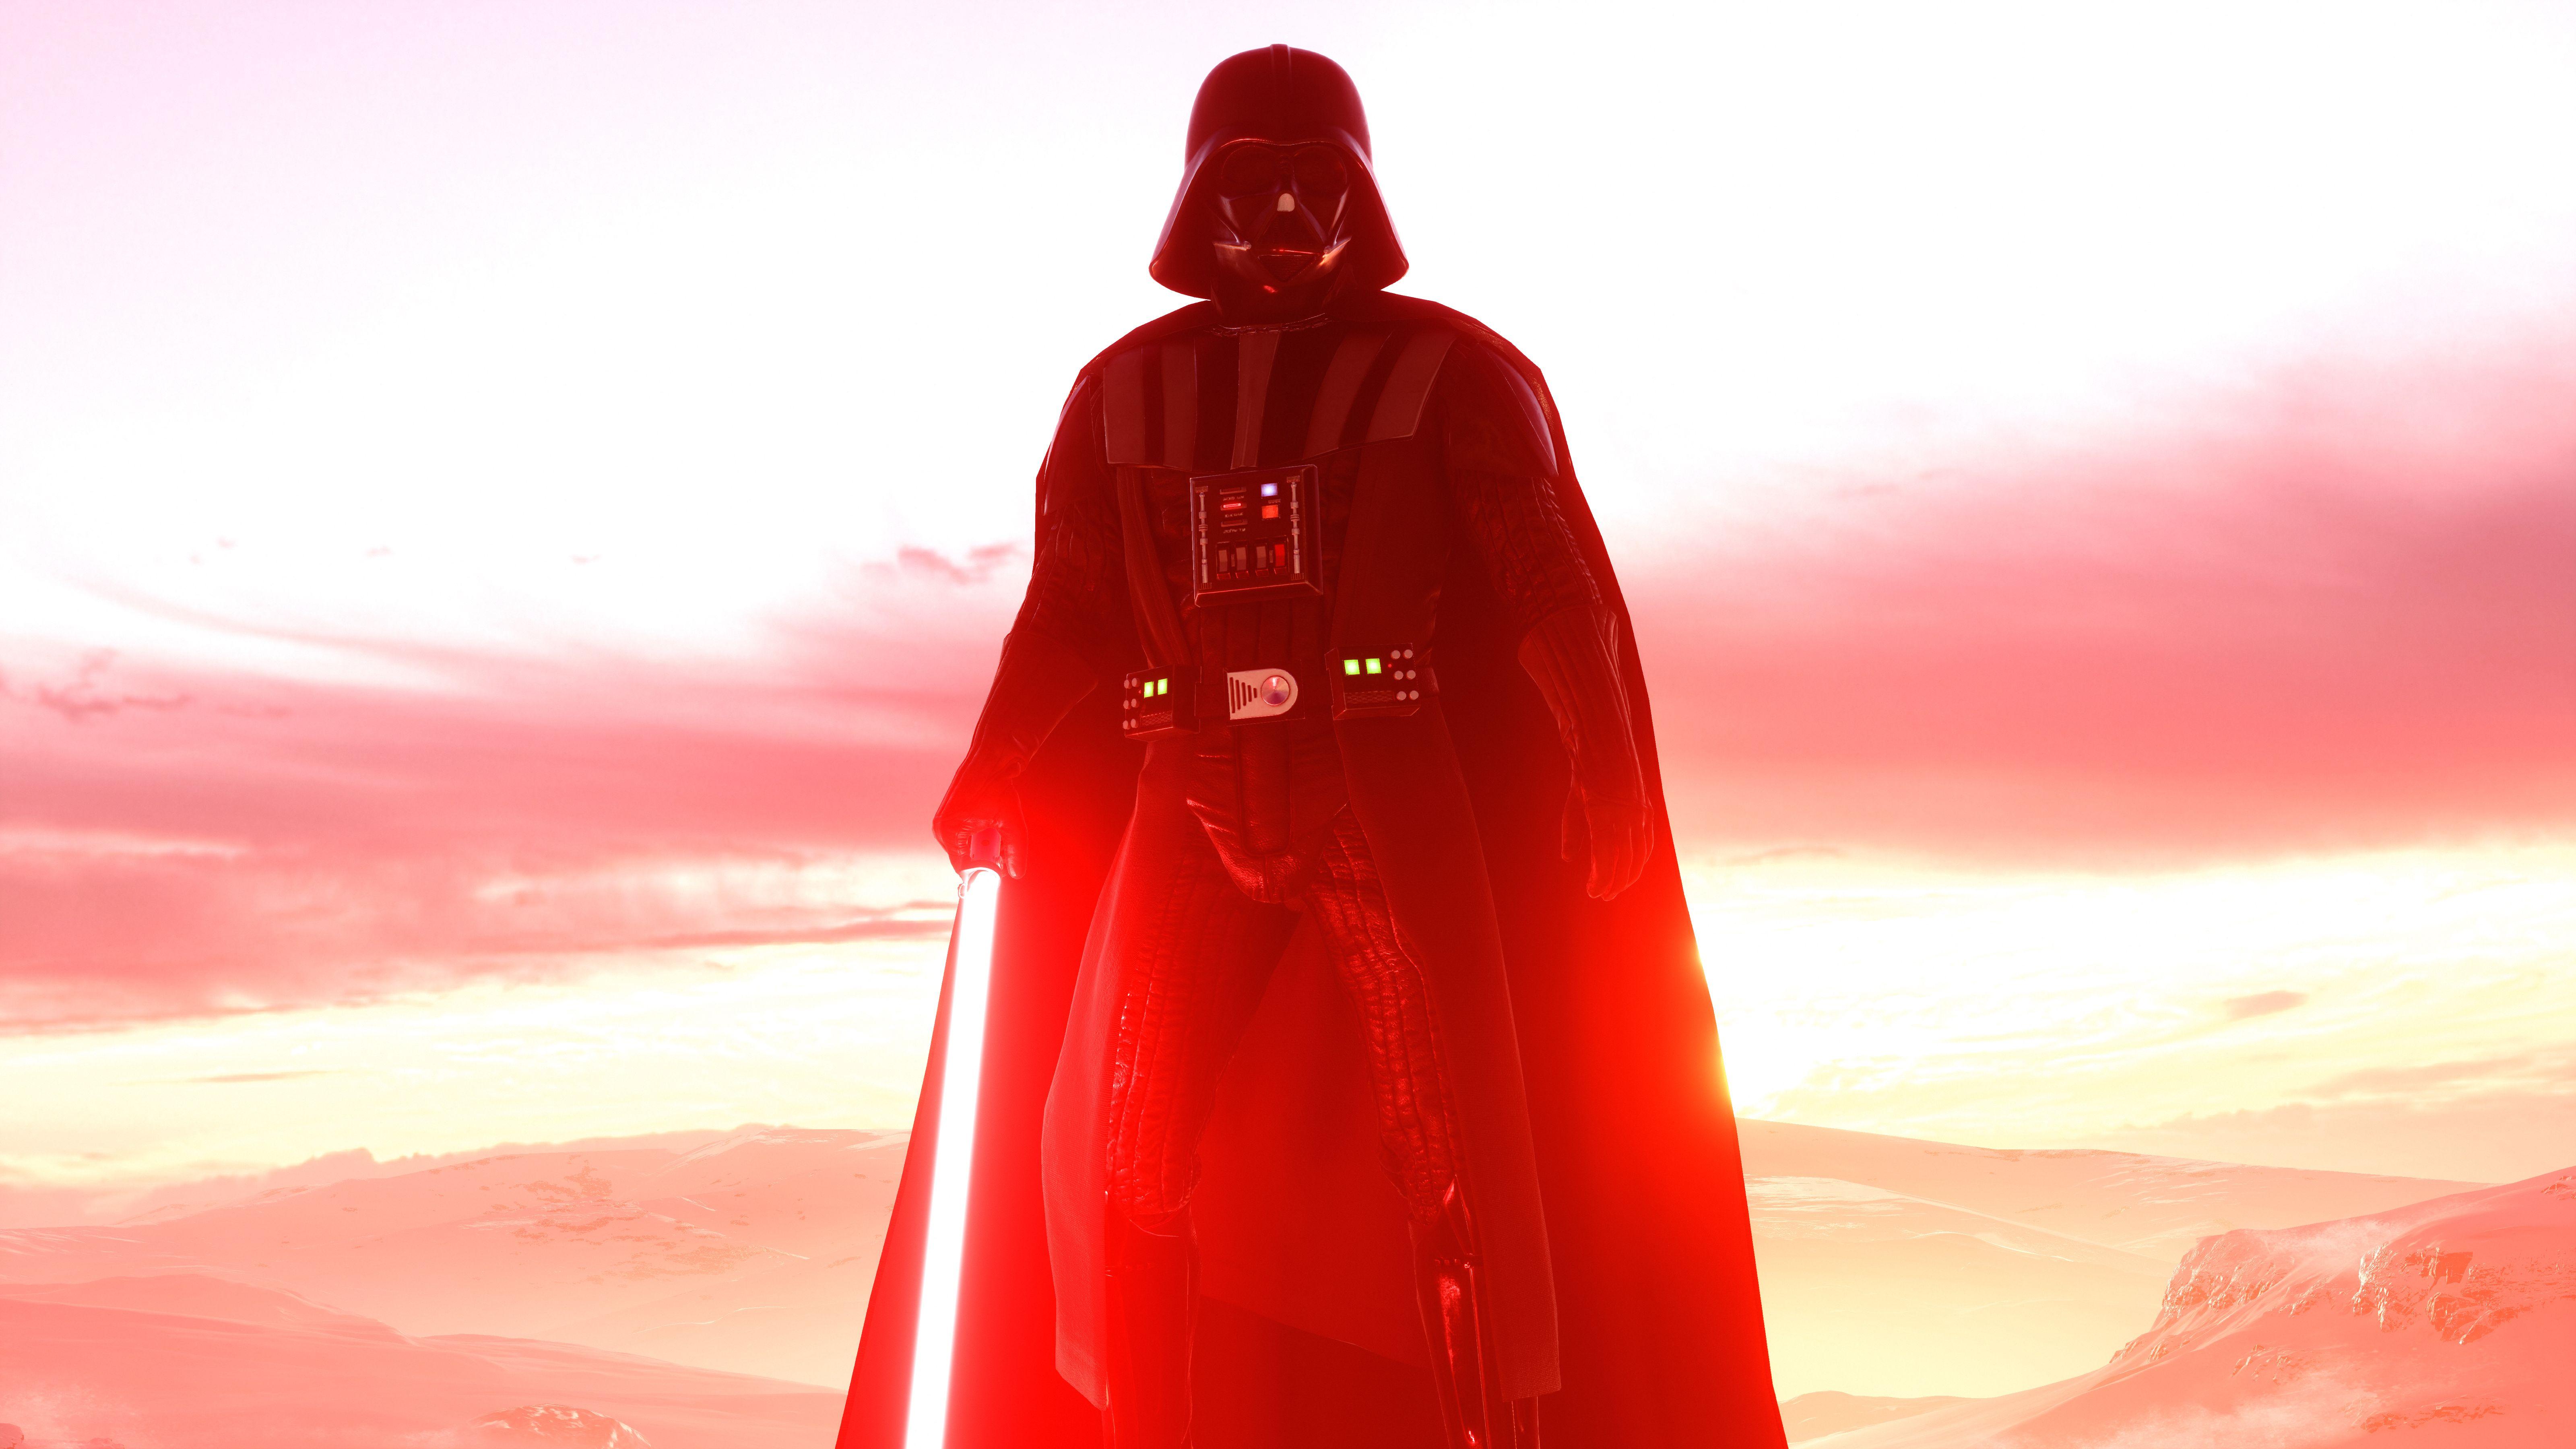 Darth Vader 4k Wallpapers - Top Những Hình Ảnh Đẹp